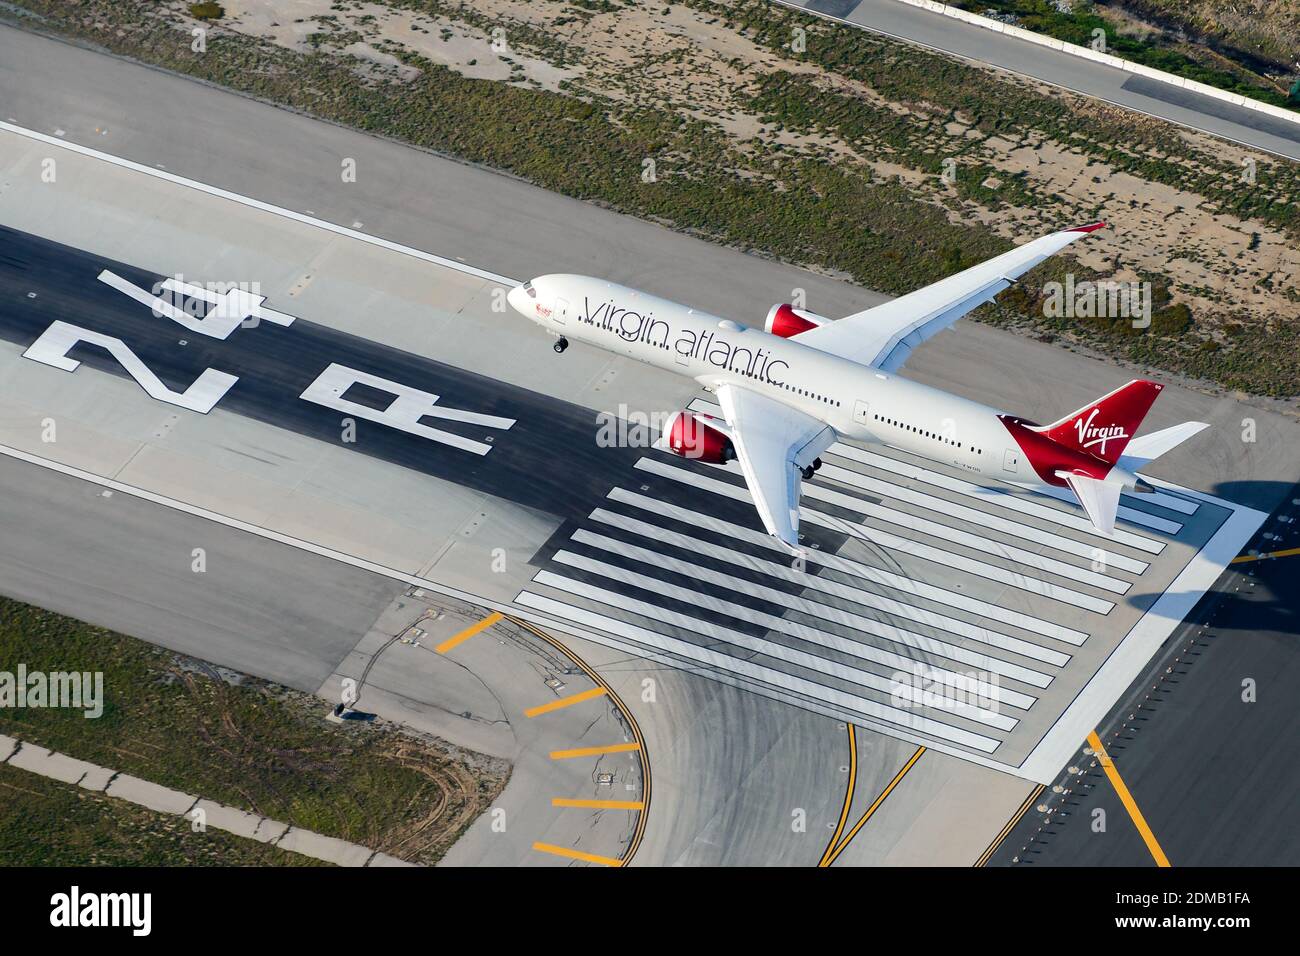 L'avion Virgin Atlantic Boeing 787 Dreamliner franchit le seuil de la piste d'atterrissage de l'aéroport. Vue aérienne de l'avion B787 (787-9). Banque D'Images